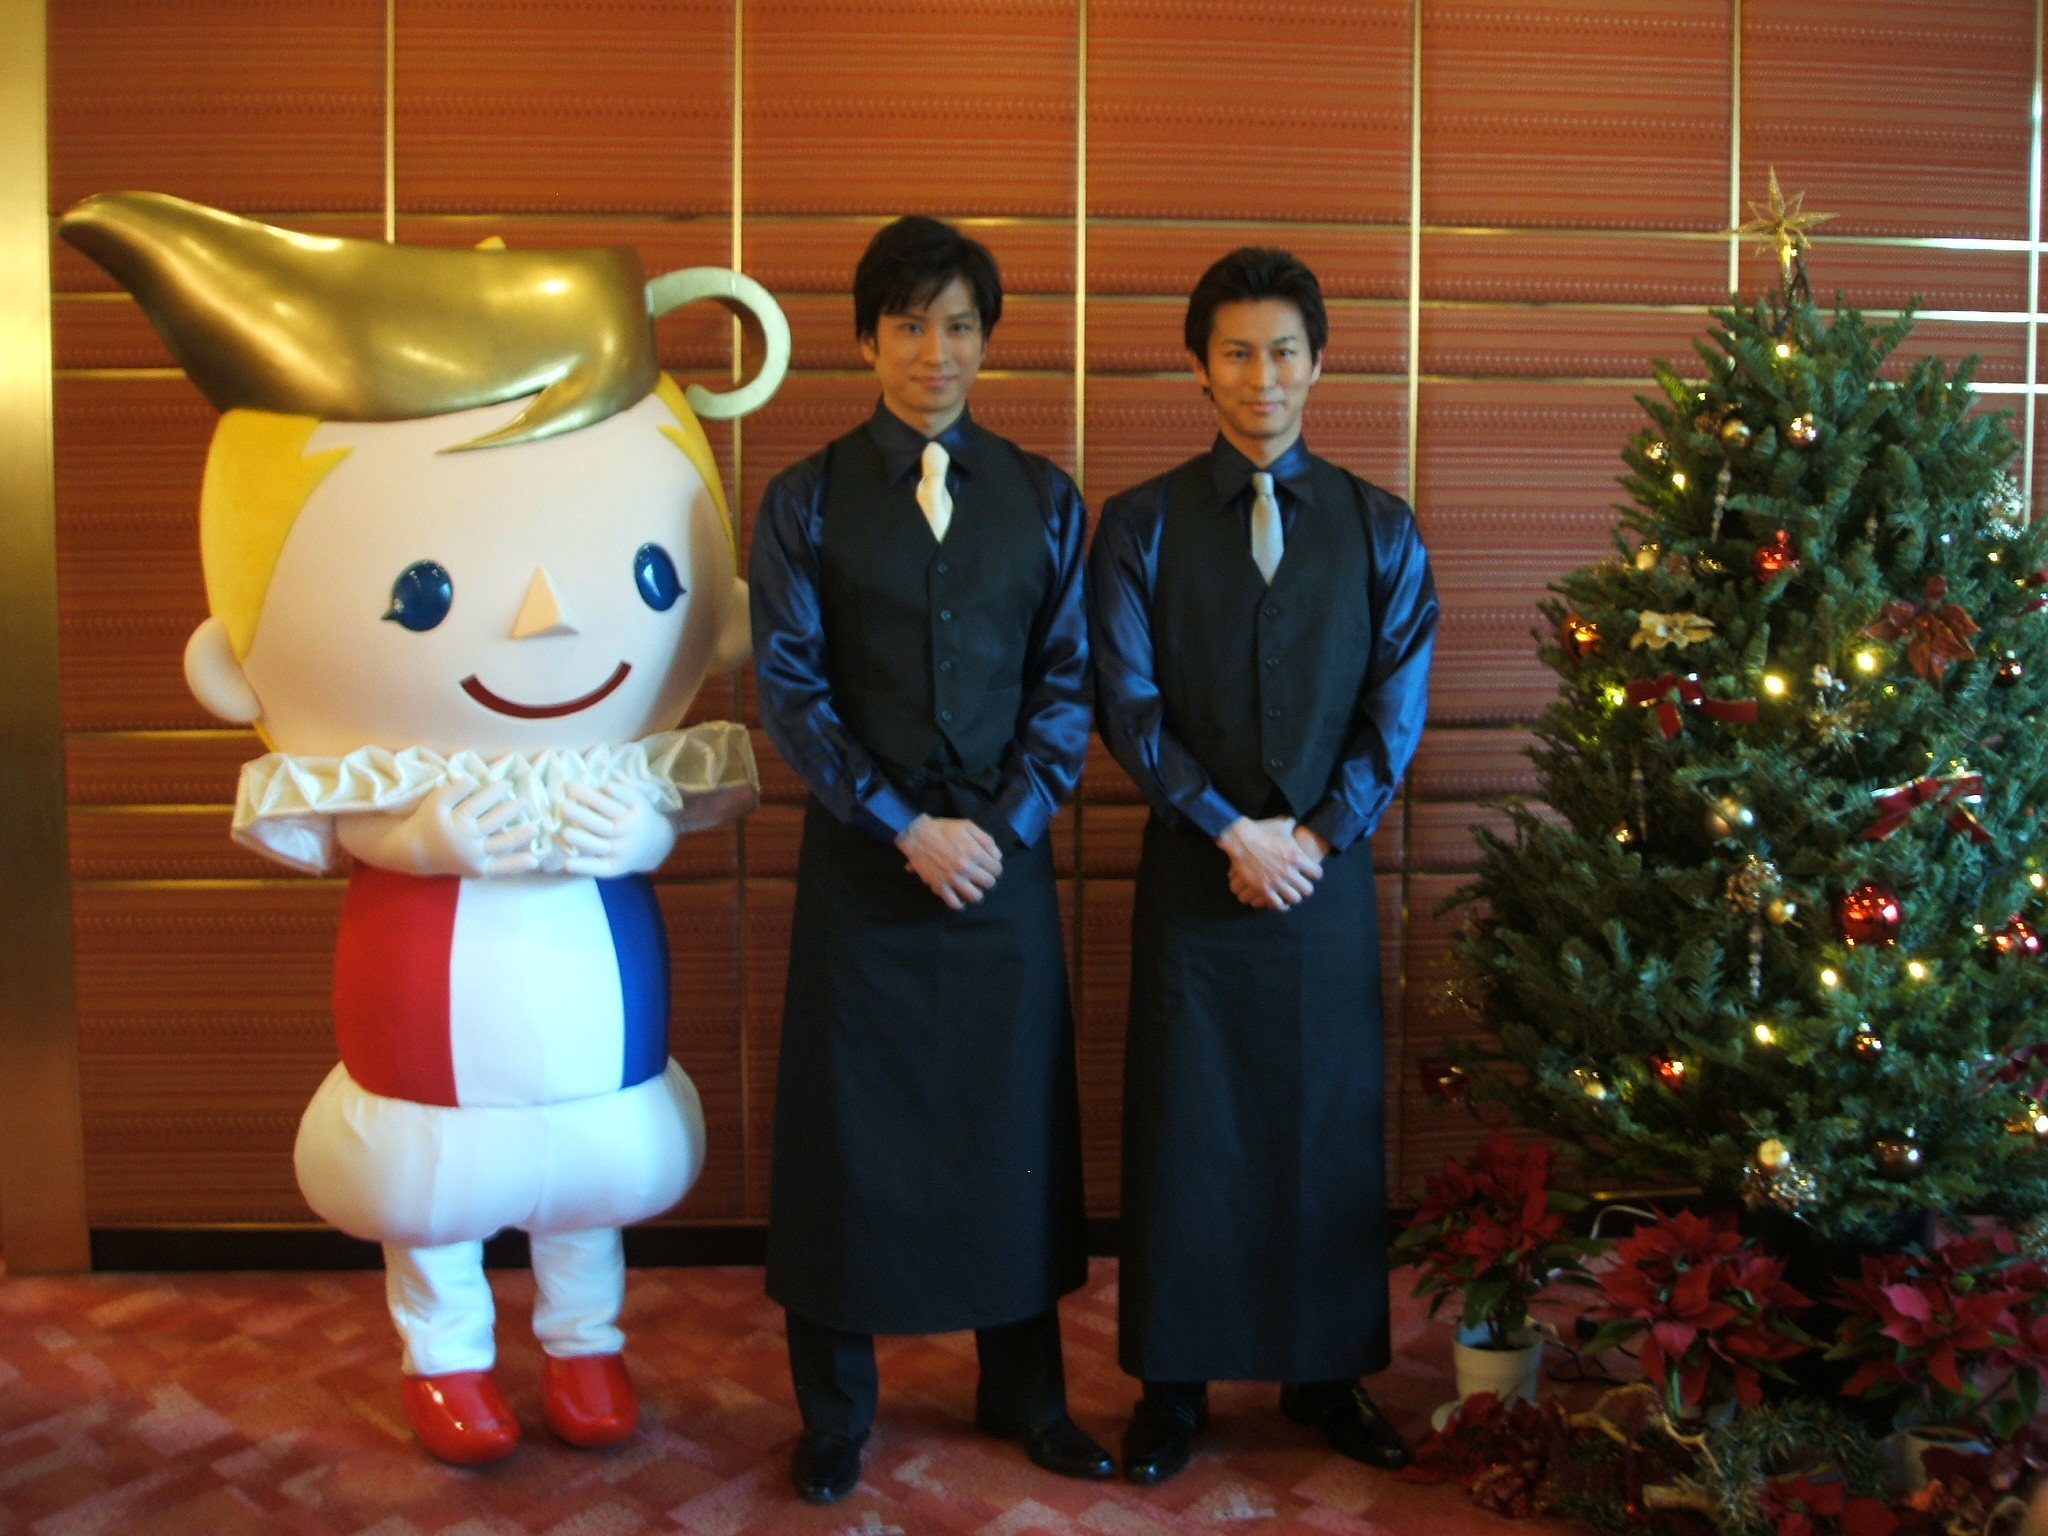 http://news.yoshimoto.co.jp/photos/uncategorized/2014/12/19/20141219123722-1456a59af2c4cf0ef477ffdd512a733de8d2b6f8.jpg